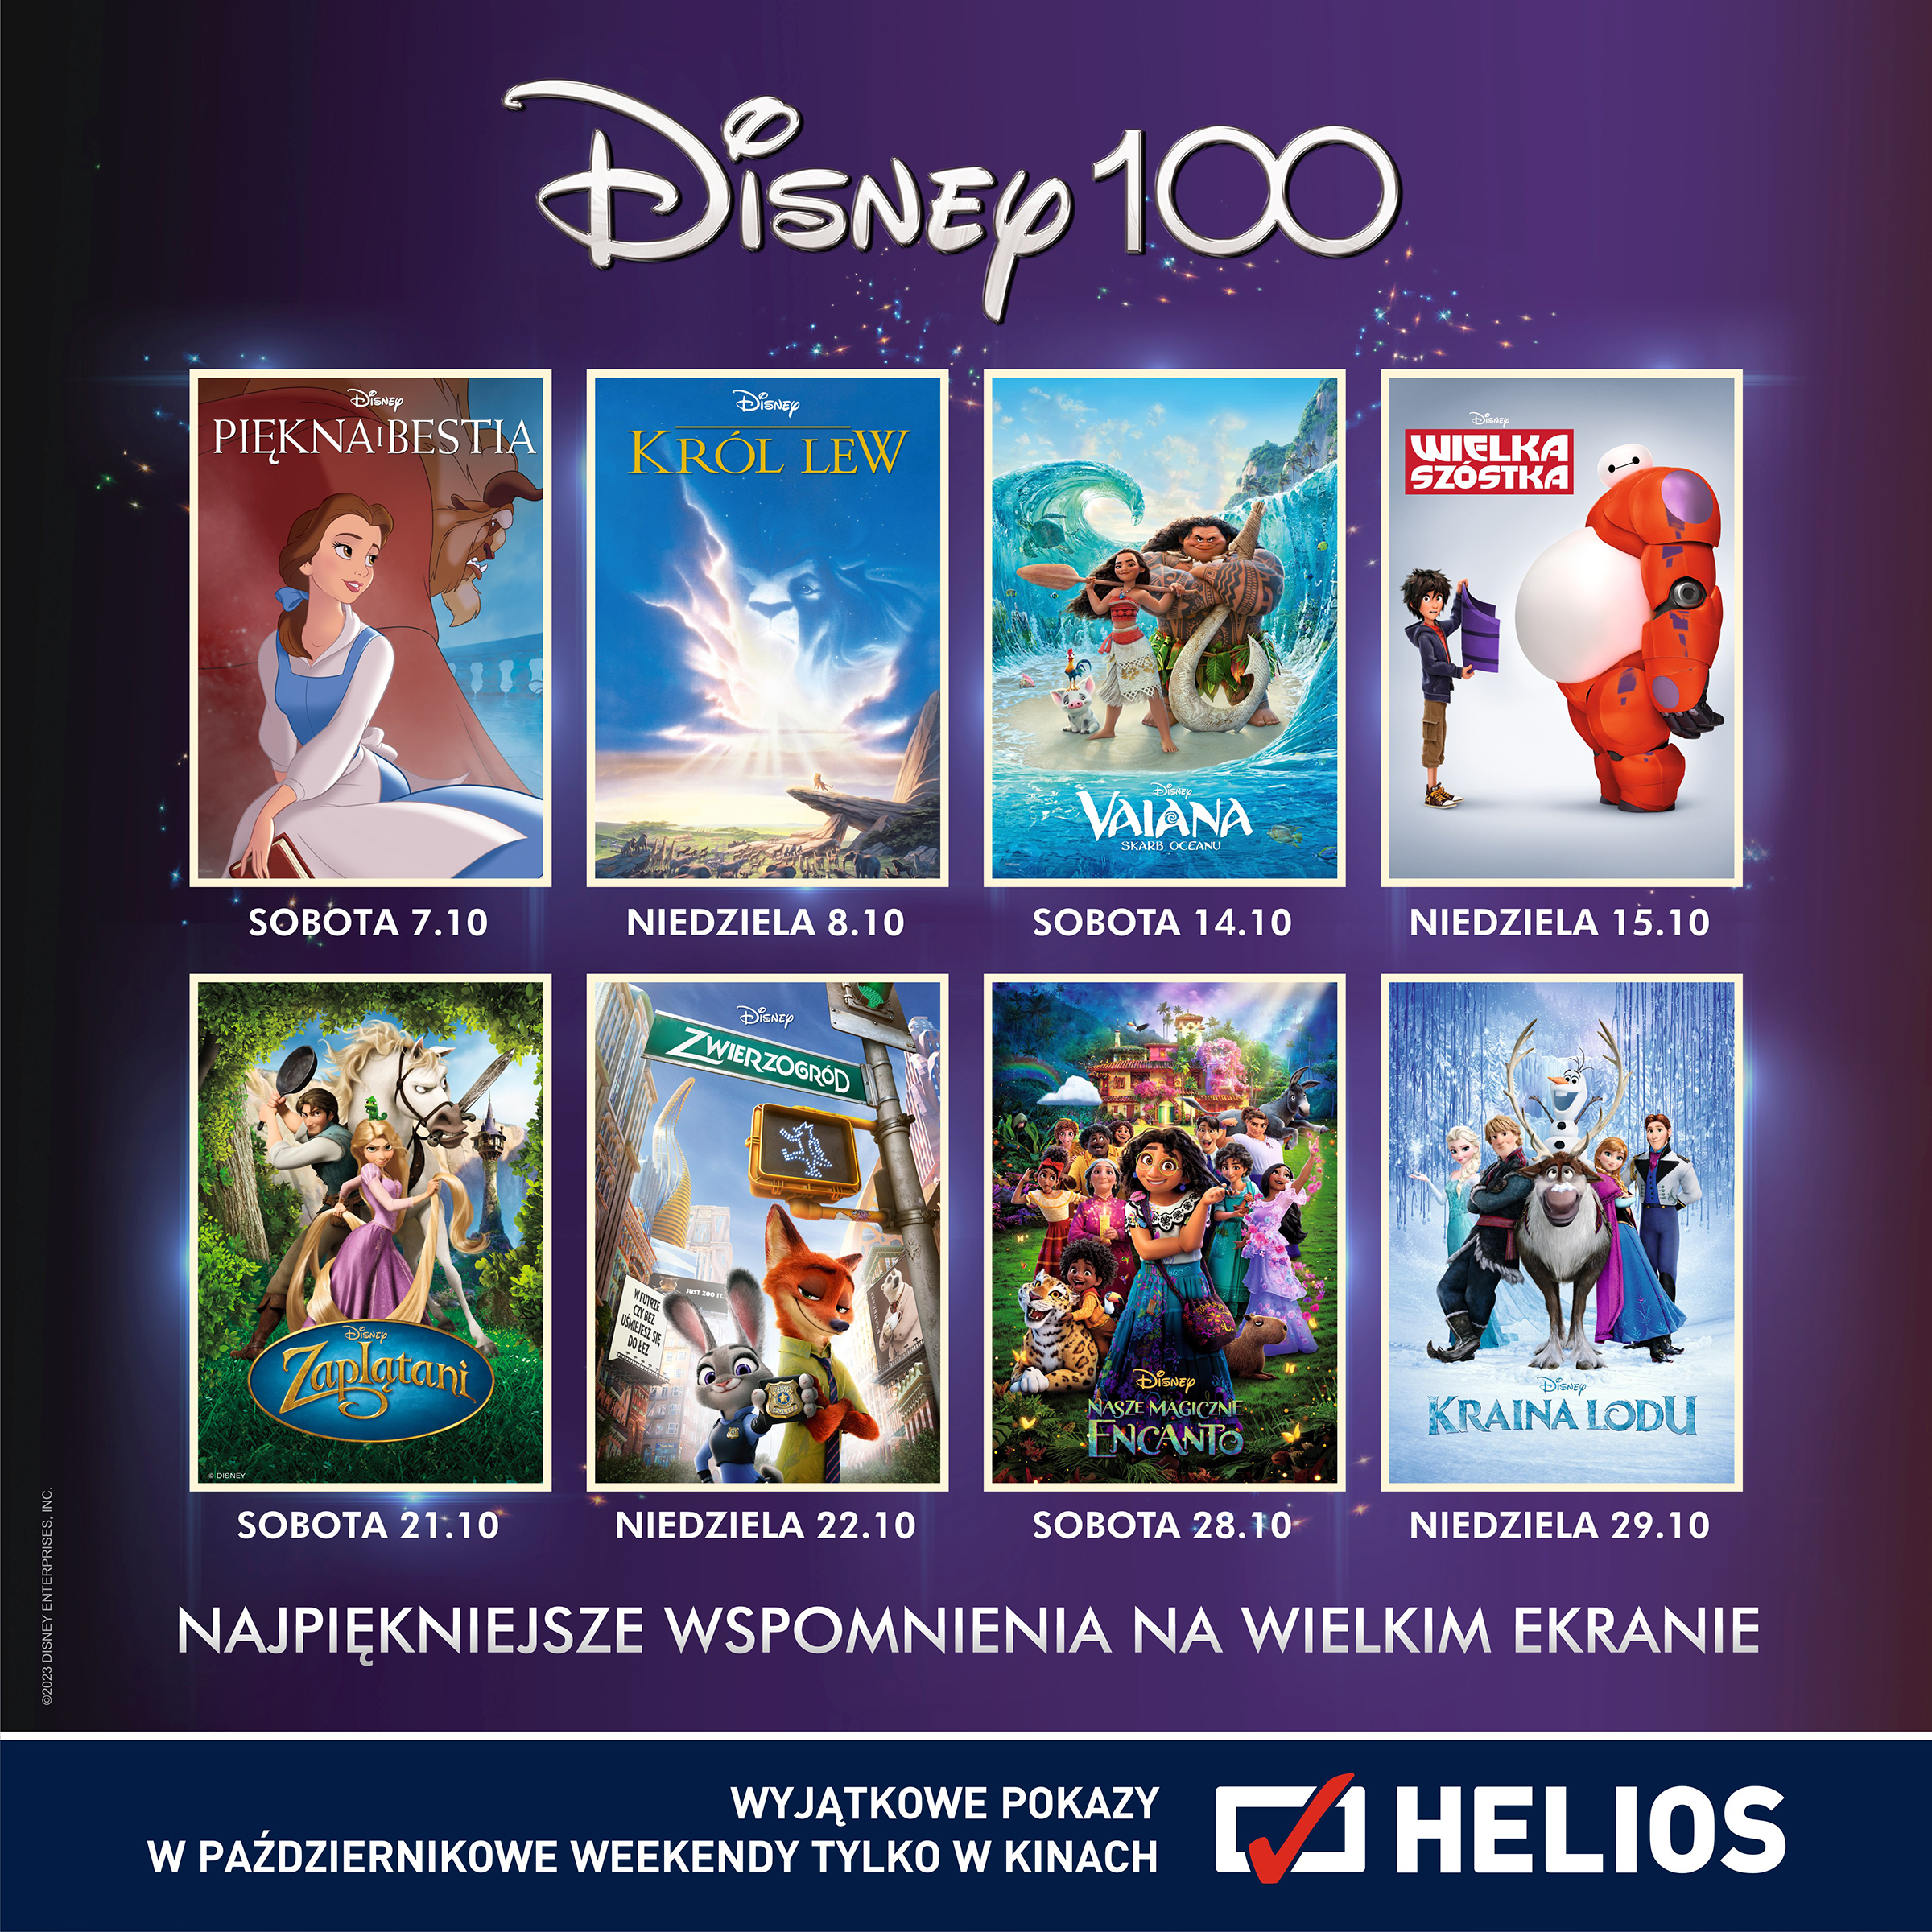 Disney100 pokazy specjalne